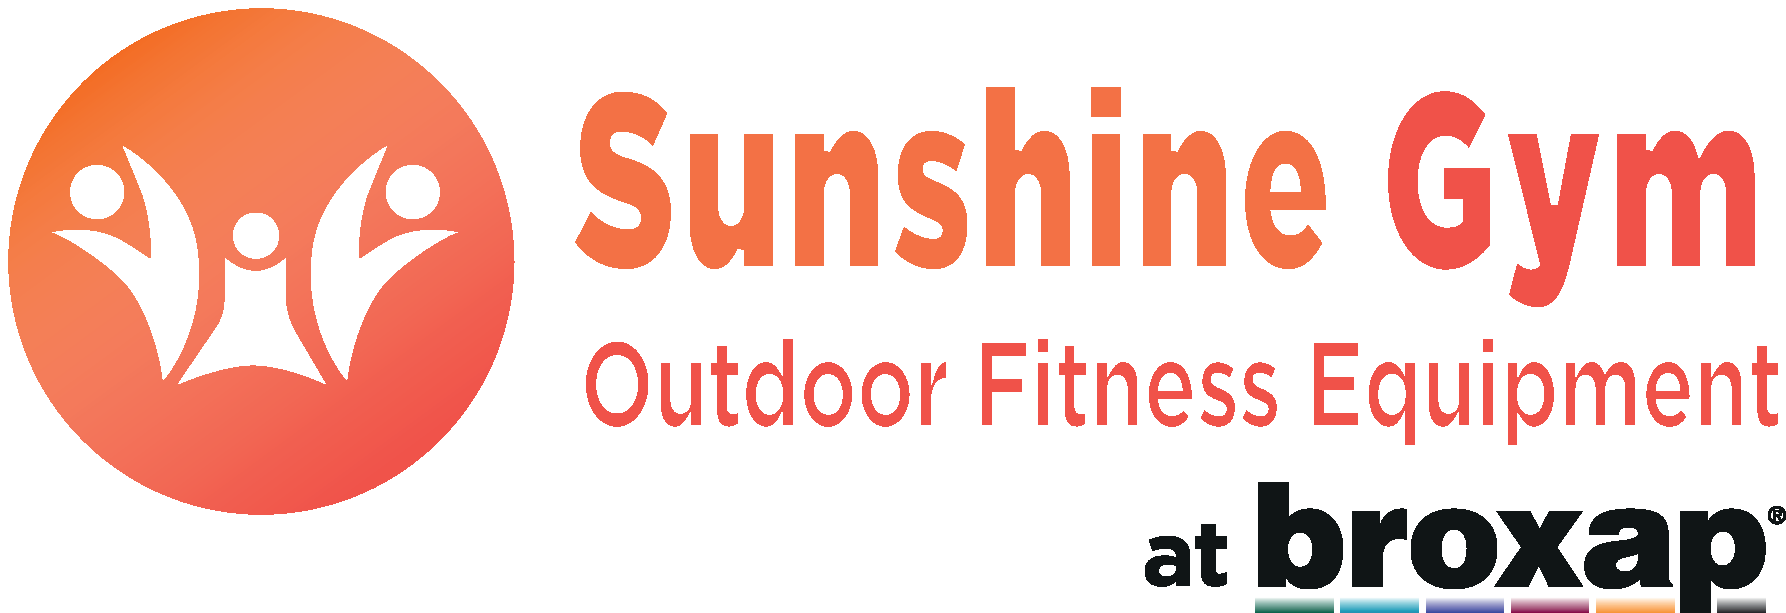 Outdoor Equipment Logo - Outdoor Gym Equipment. Outdoor Fitness Equipment